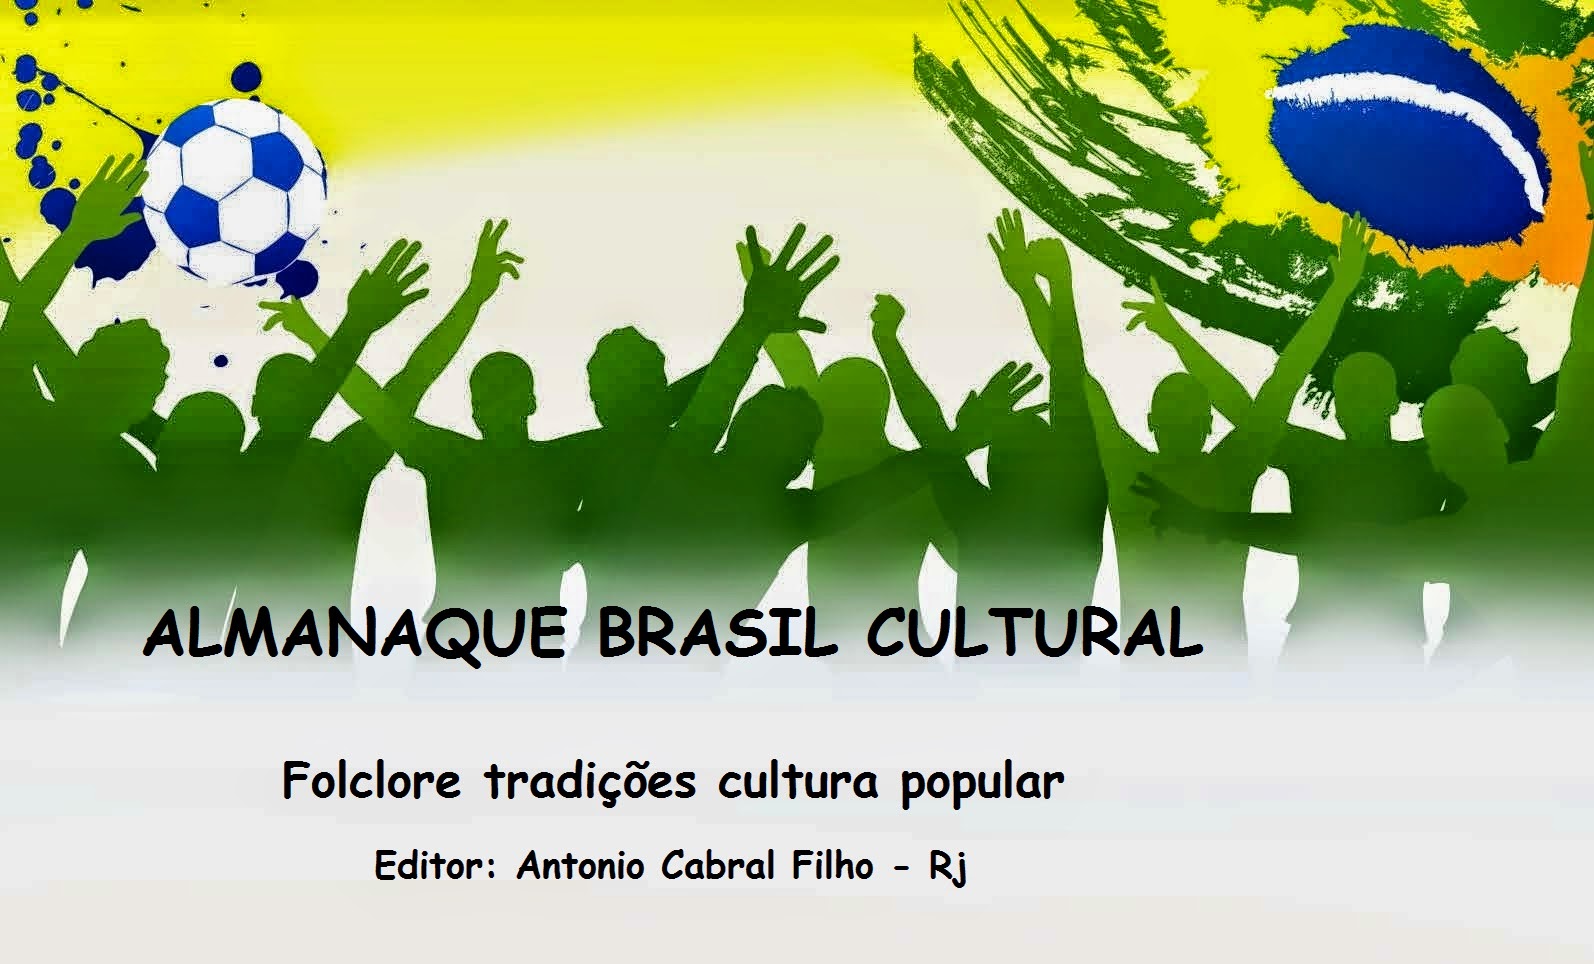 Almanaque Brasil Cultural * Folclore, tradições, cultura popular *